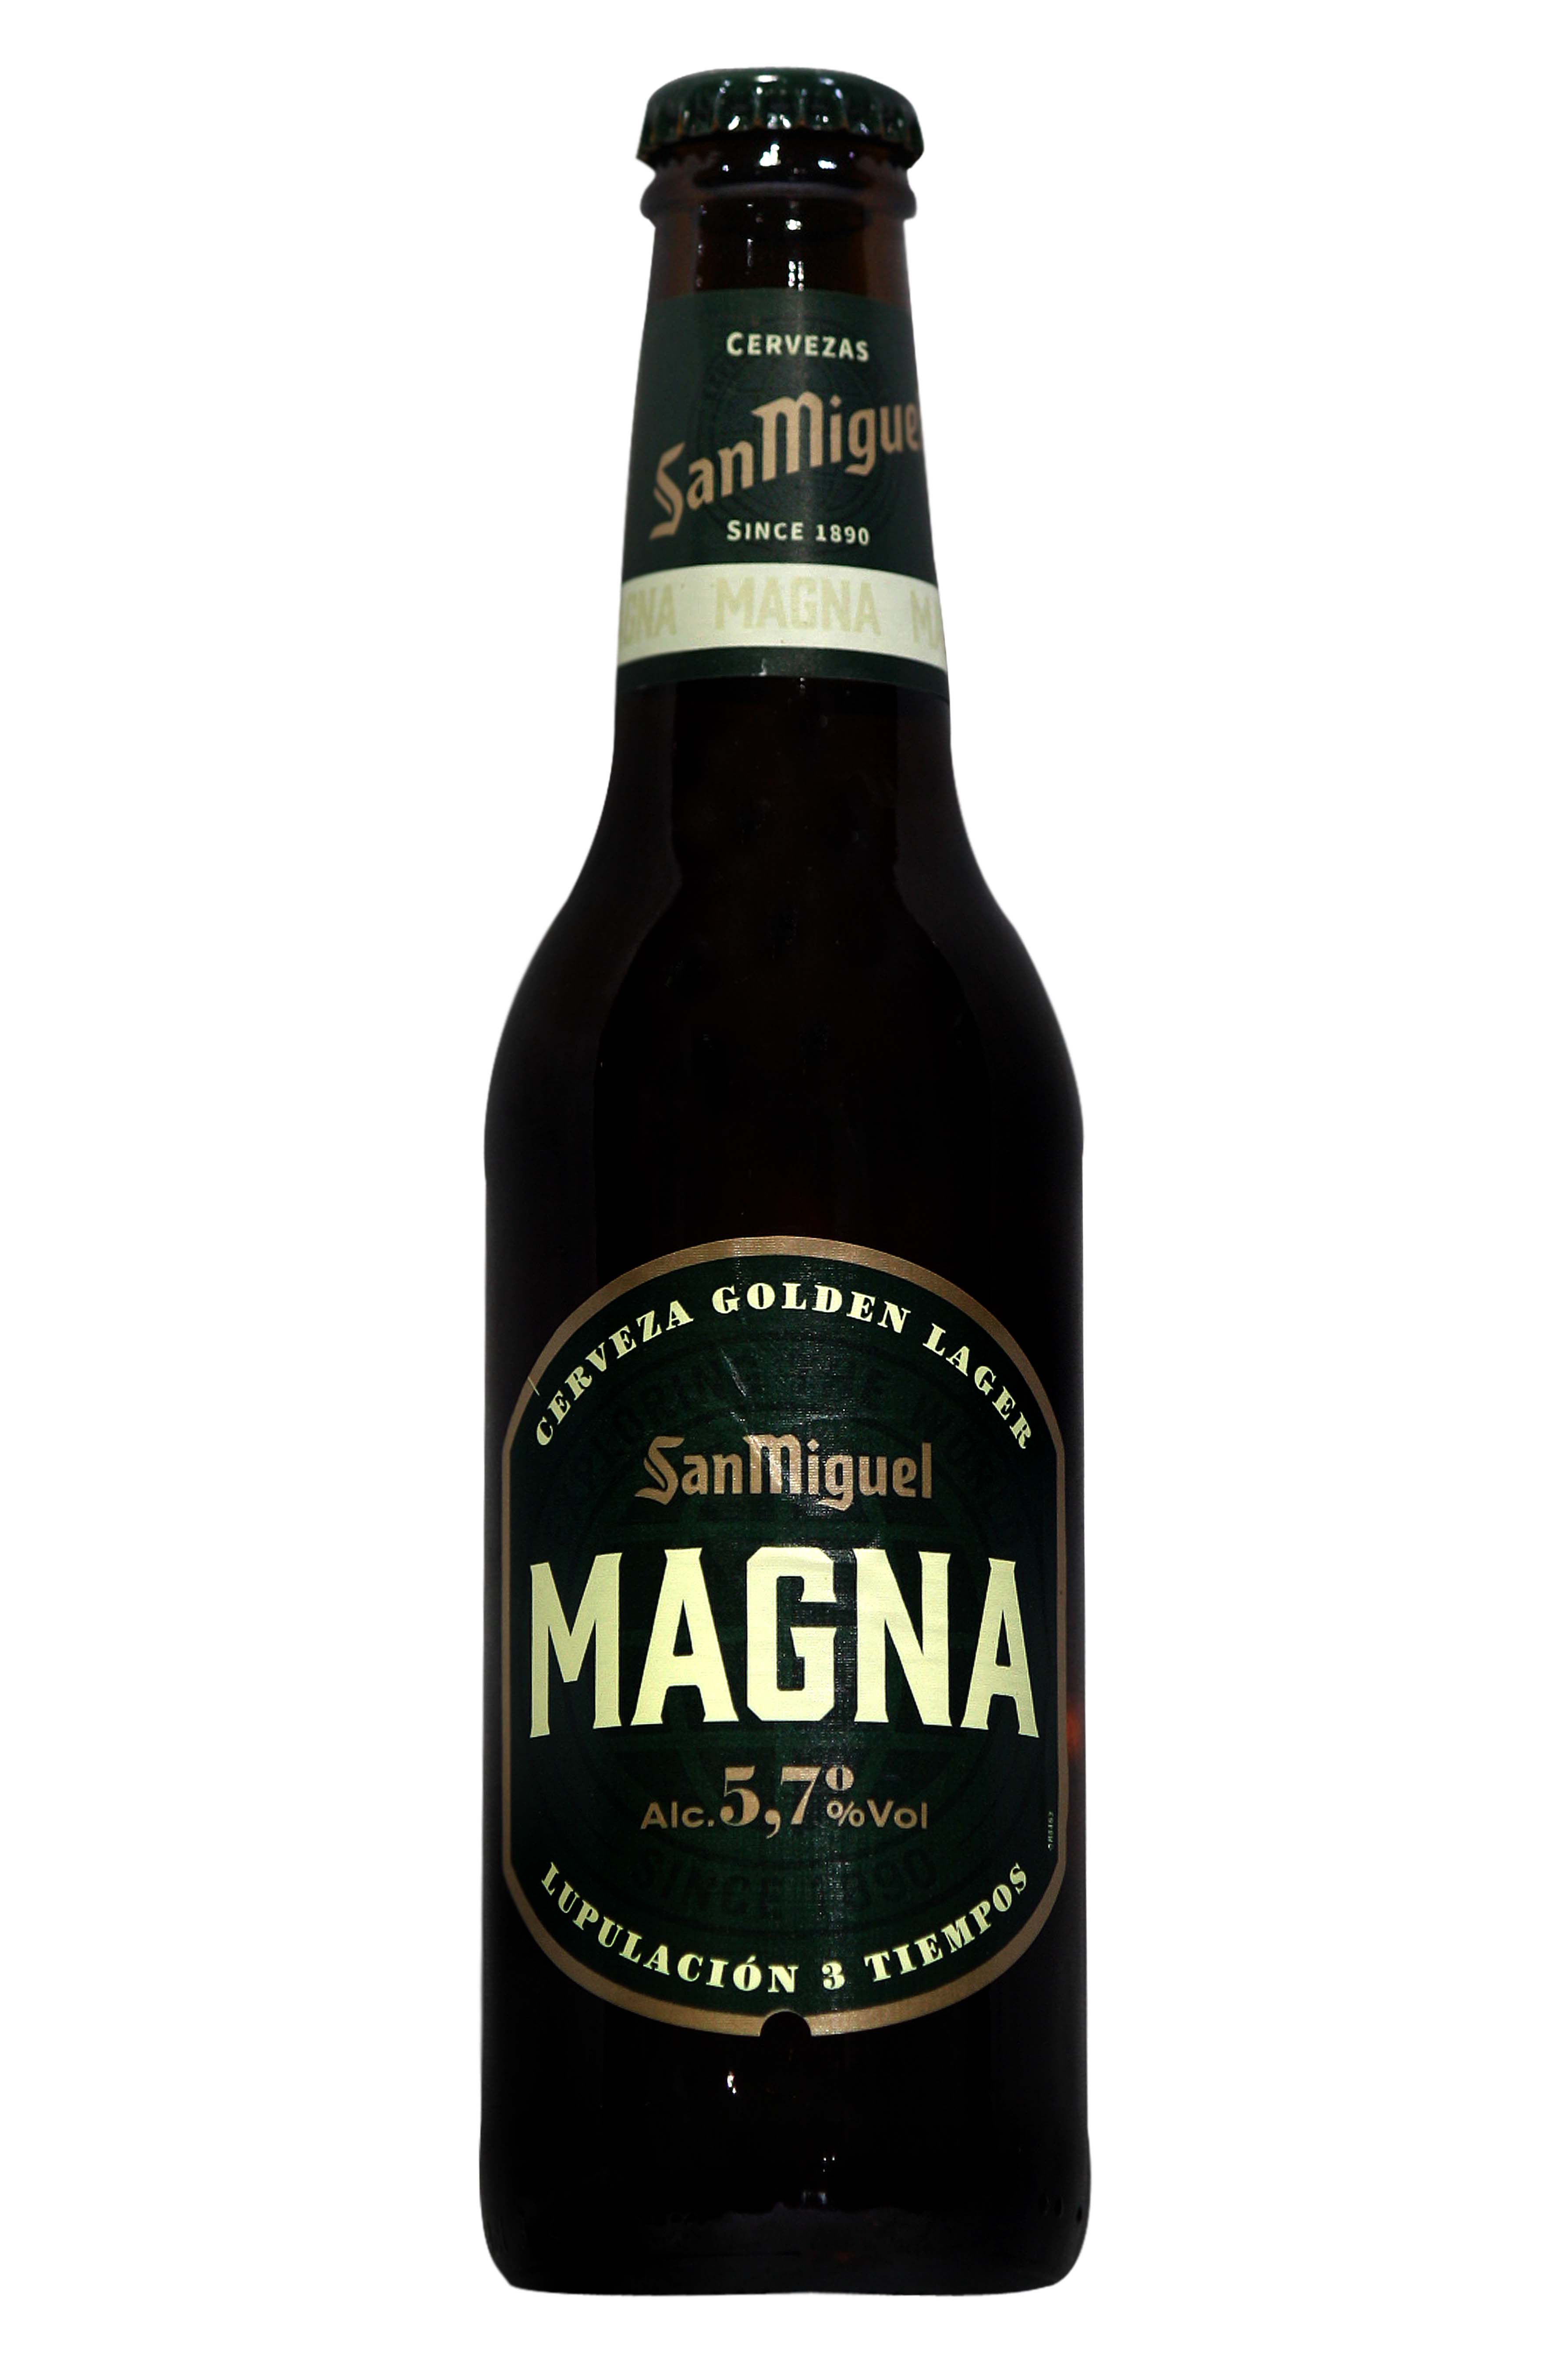 Magna beer